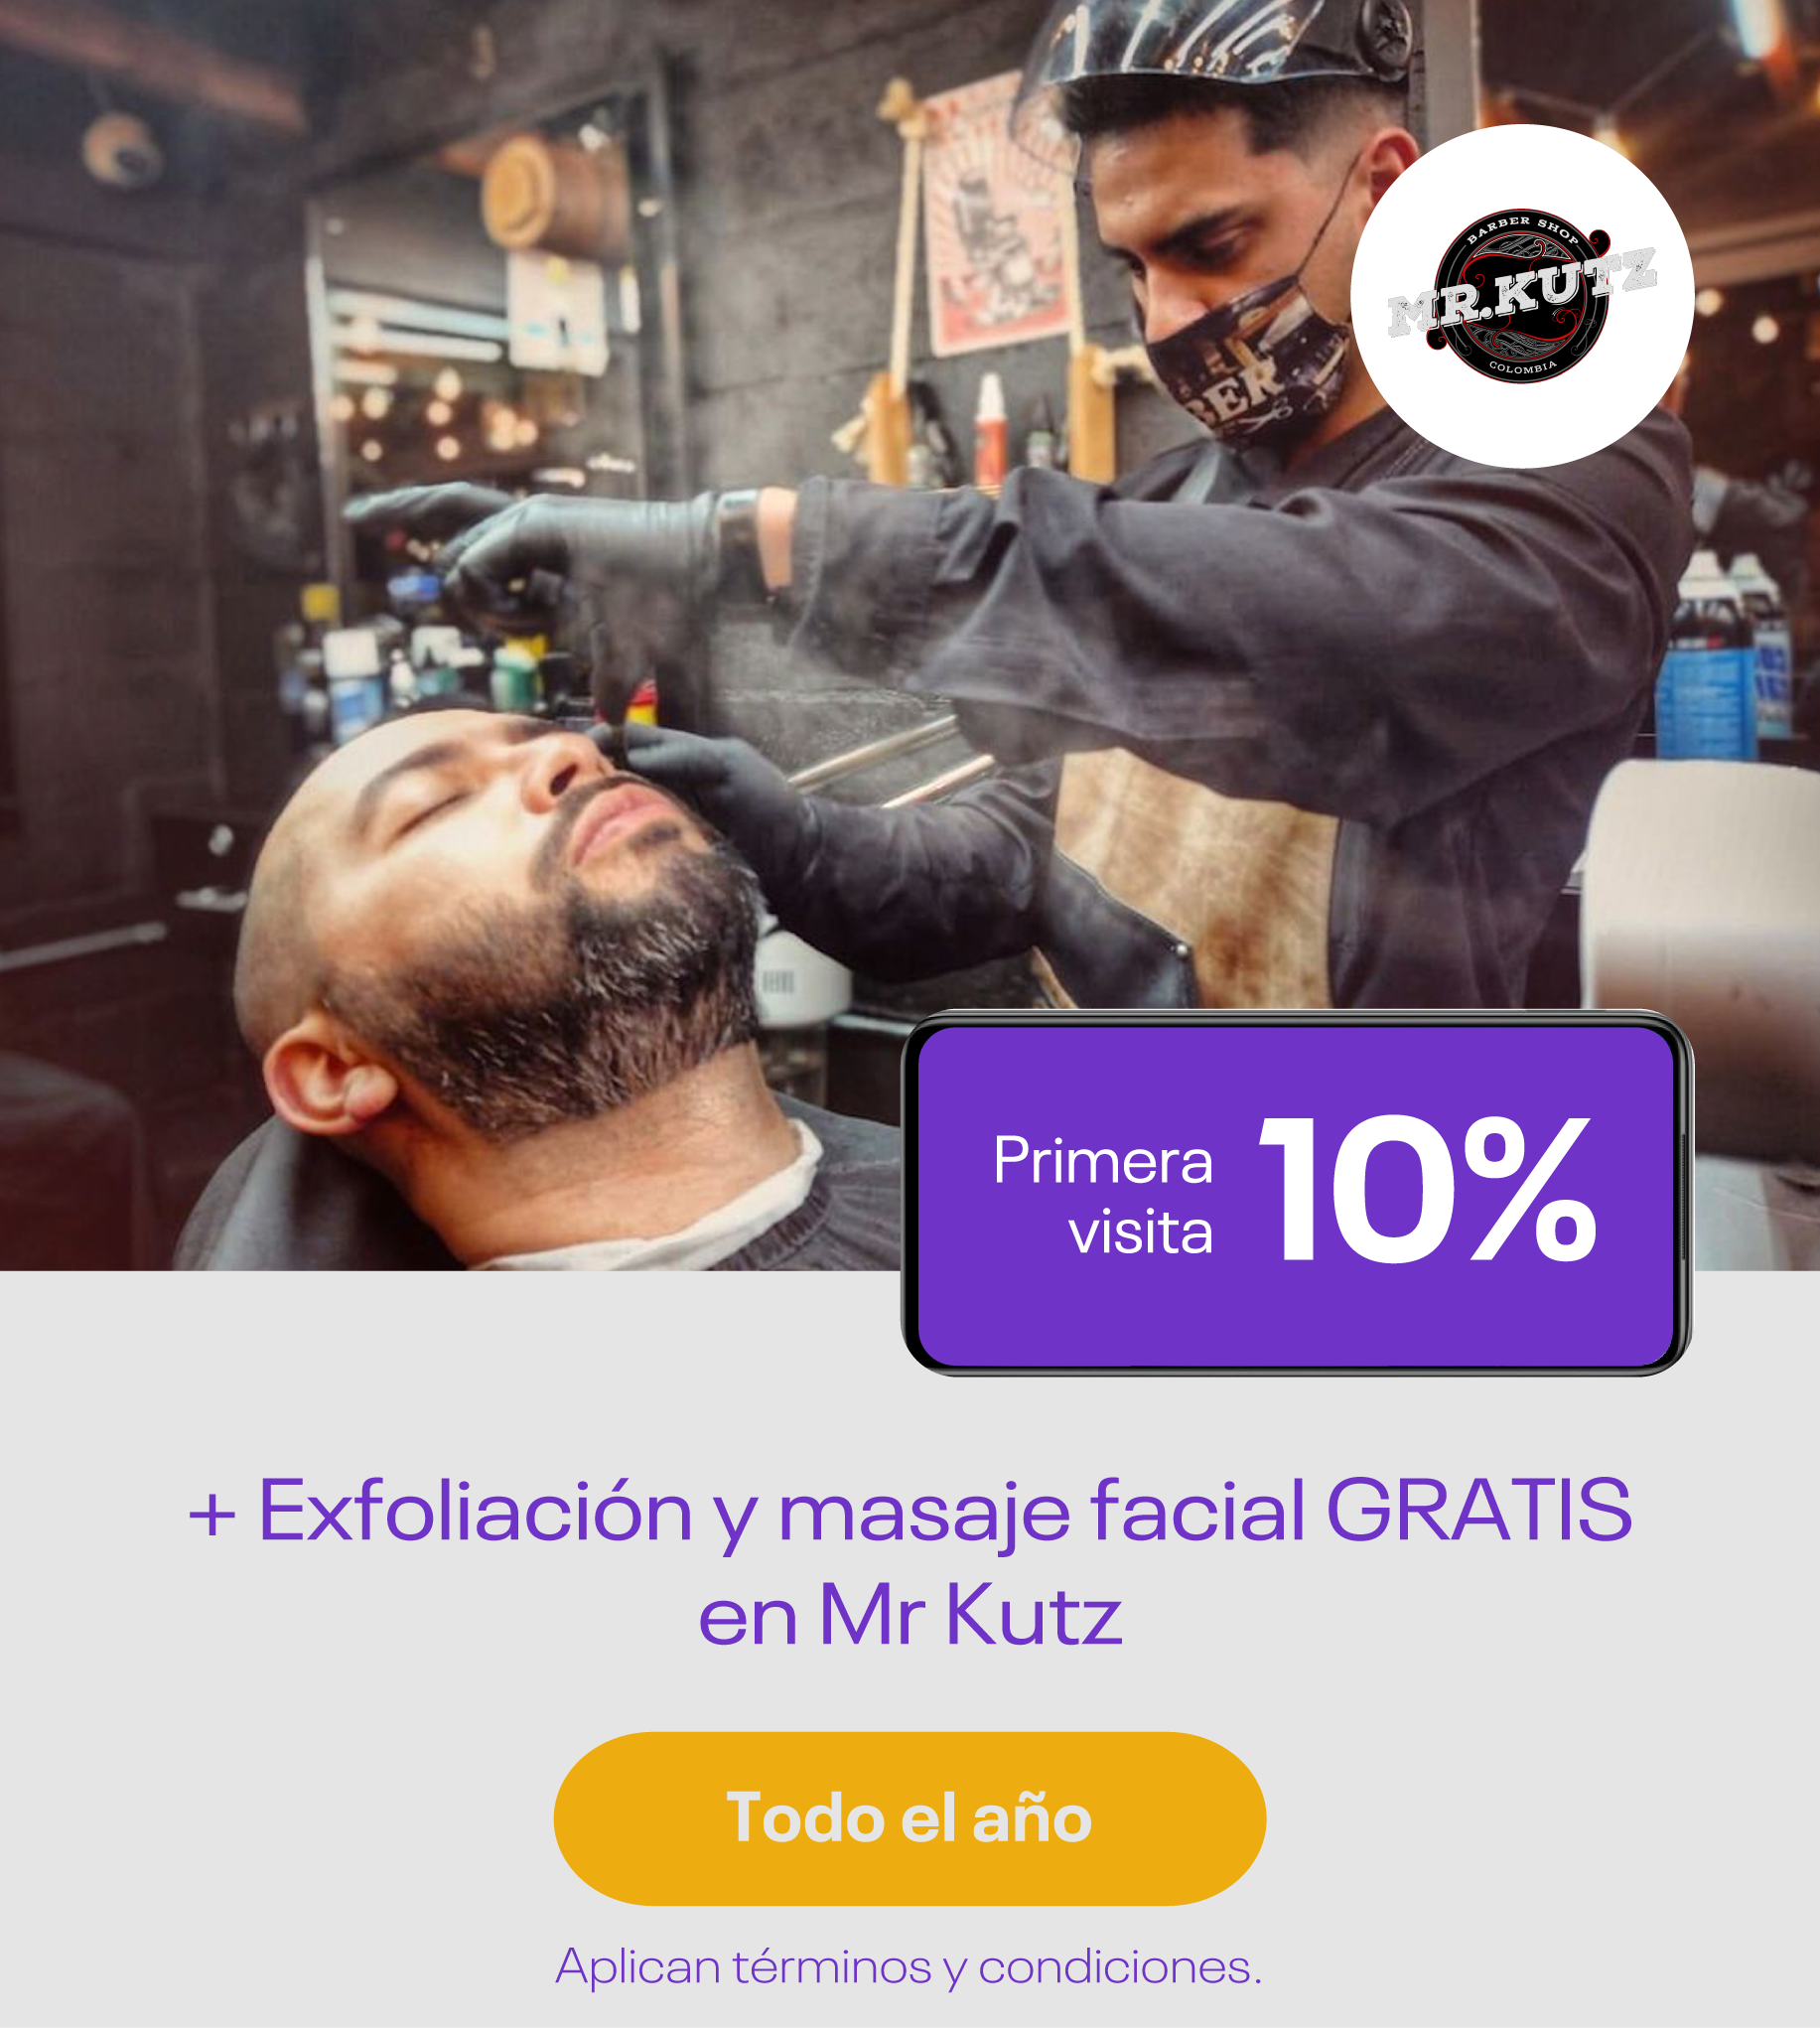 10% de descuento + exfoliación y masaje facial gratis en primera visita a Mr. Kutz Barbería en Viva Envigado